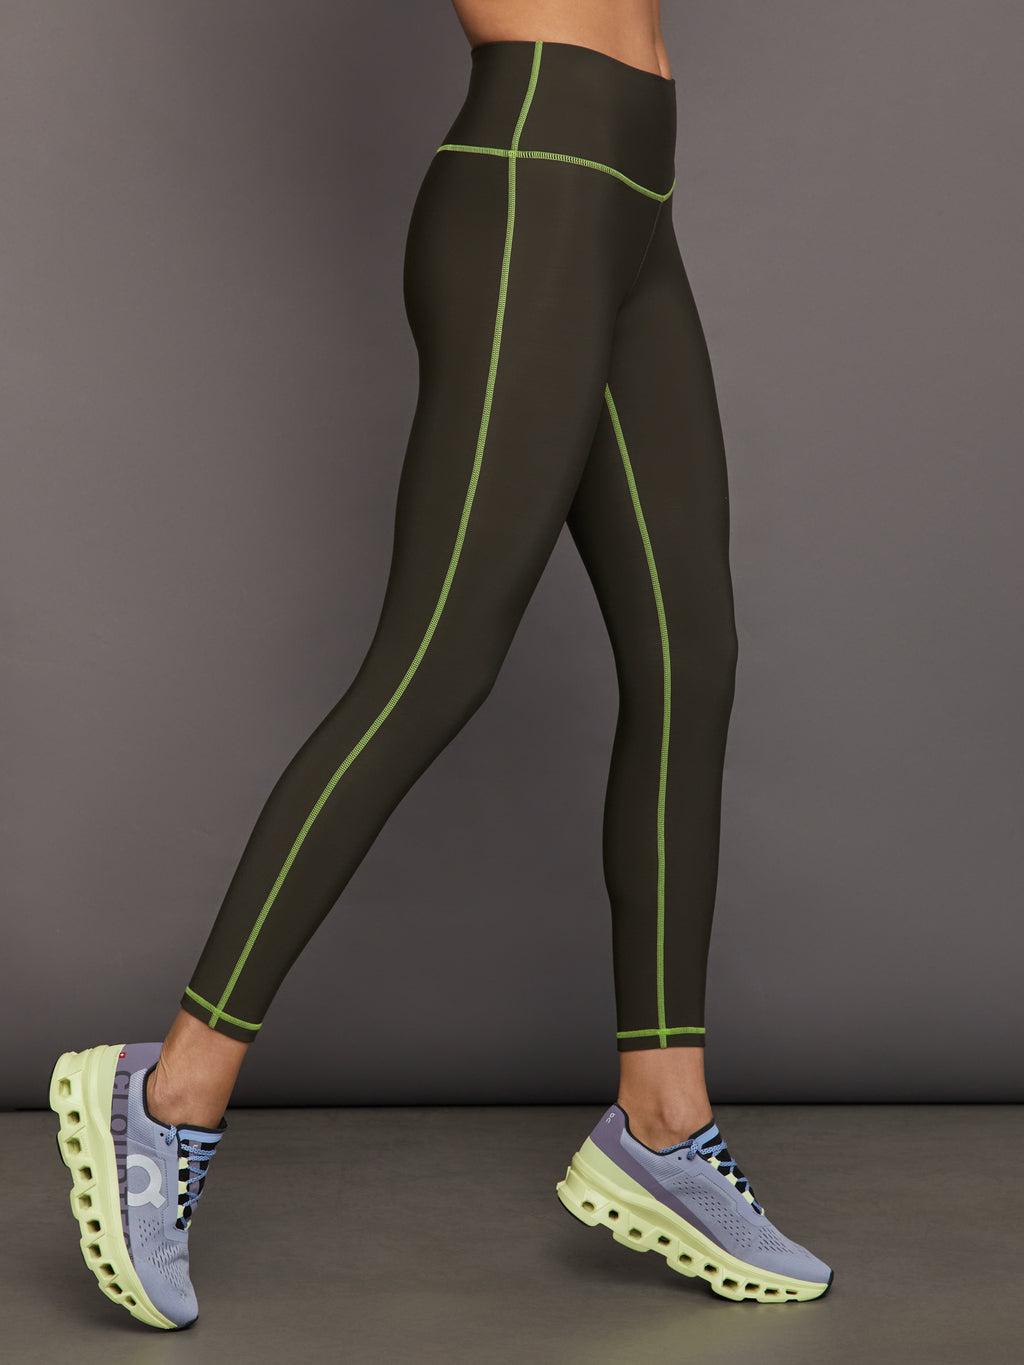 Liliana Faux Leather Leggings - Olive | Leather leggings, Outfits with  leggings, Leather leggings outfit